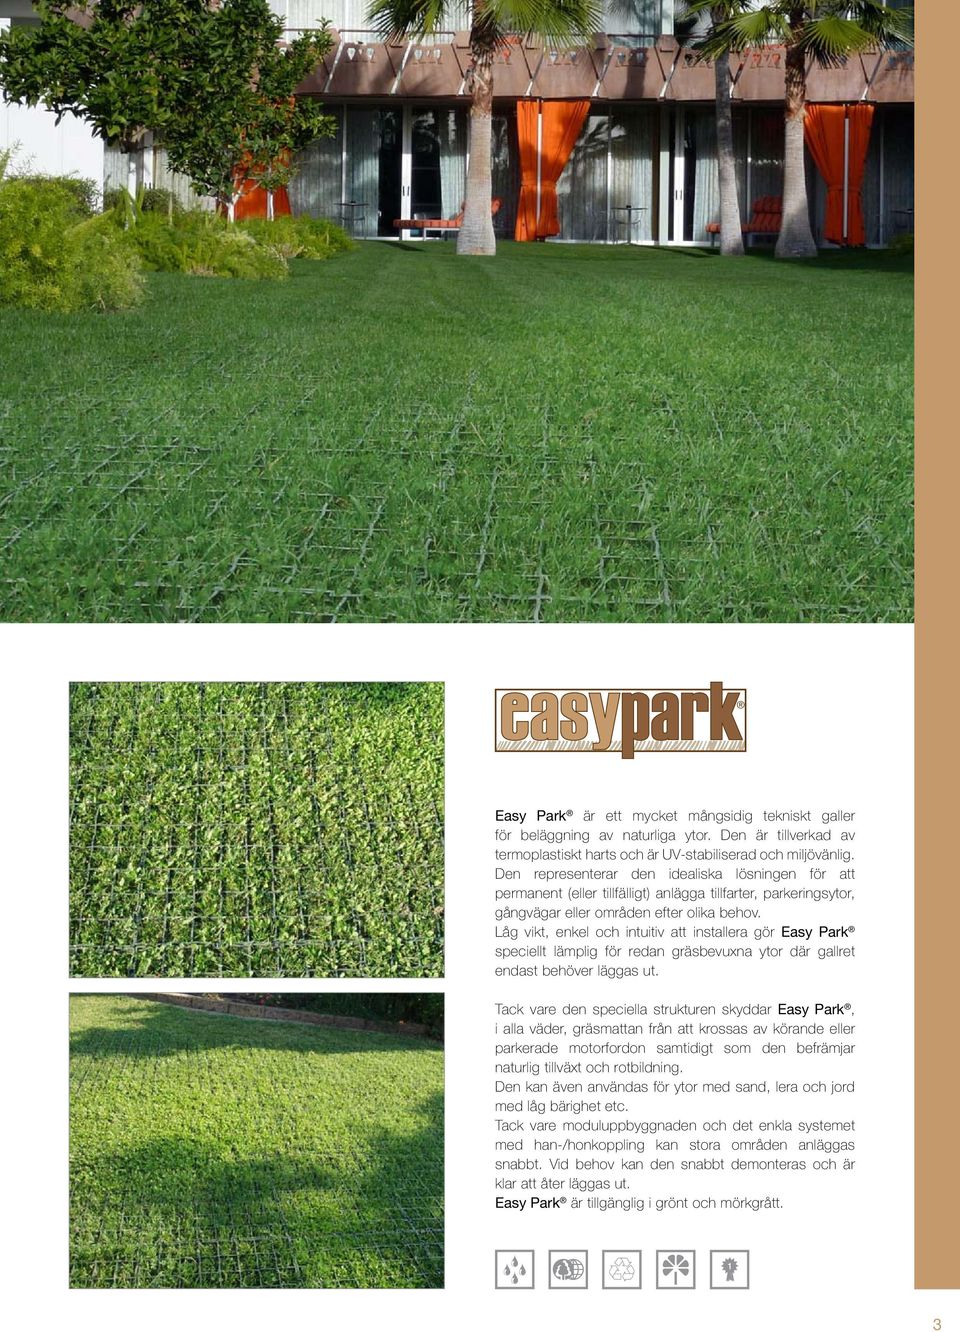 Låg vikt, enkel och intuitiv att installera gör Easy Park speciellt lämplig för redan gräsbevuxna ytor där gallret endast behöver läggas ut.